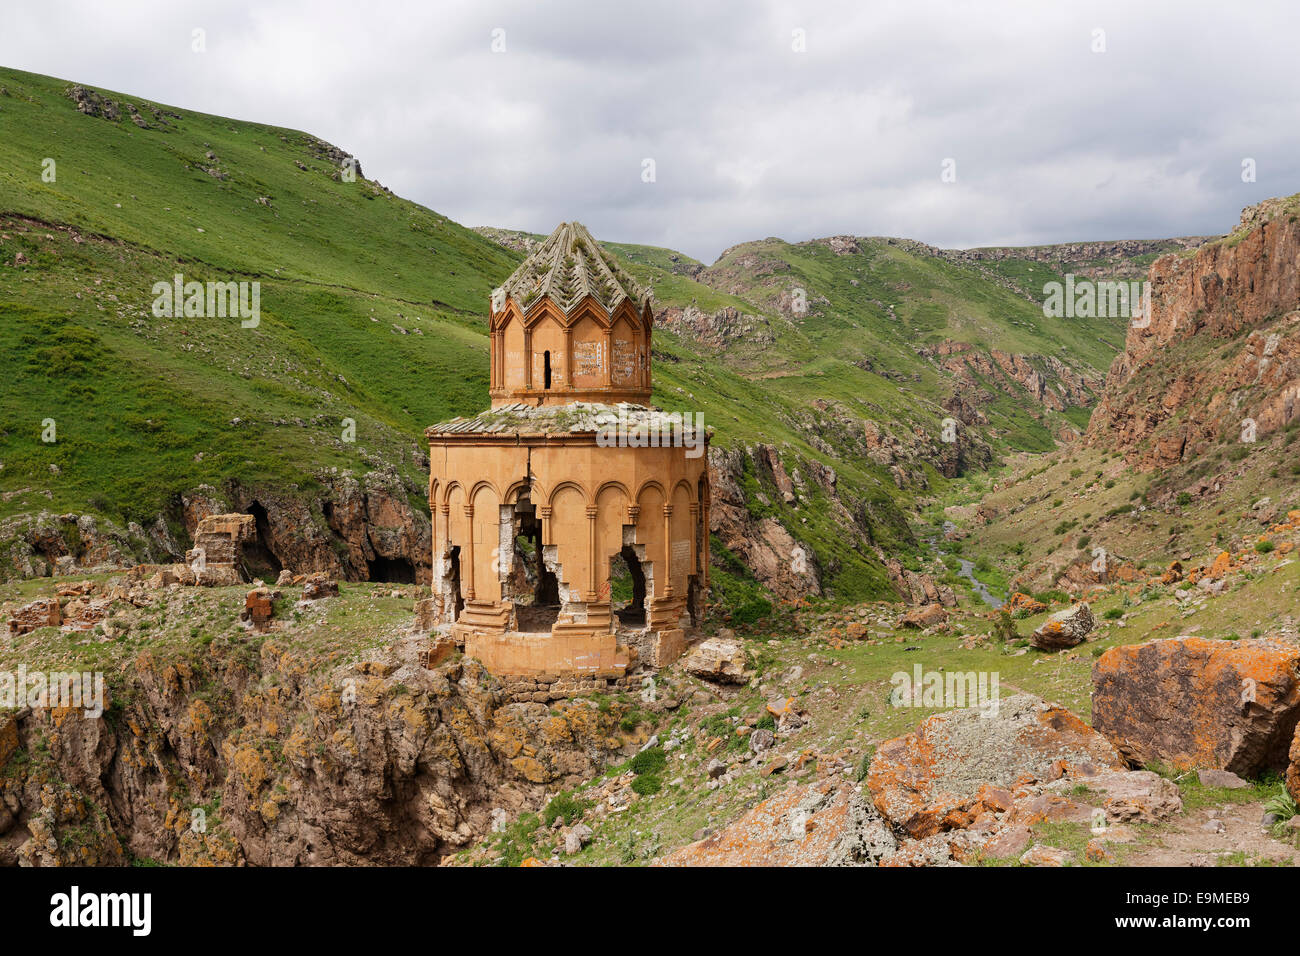 Khtzkonk monasterio armenio o Digor Beşkilise Manastırı, provincia de Kars, región de Anatolia oriental, en Anatolia, Turquía Foto de stock